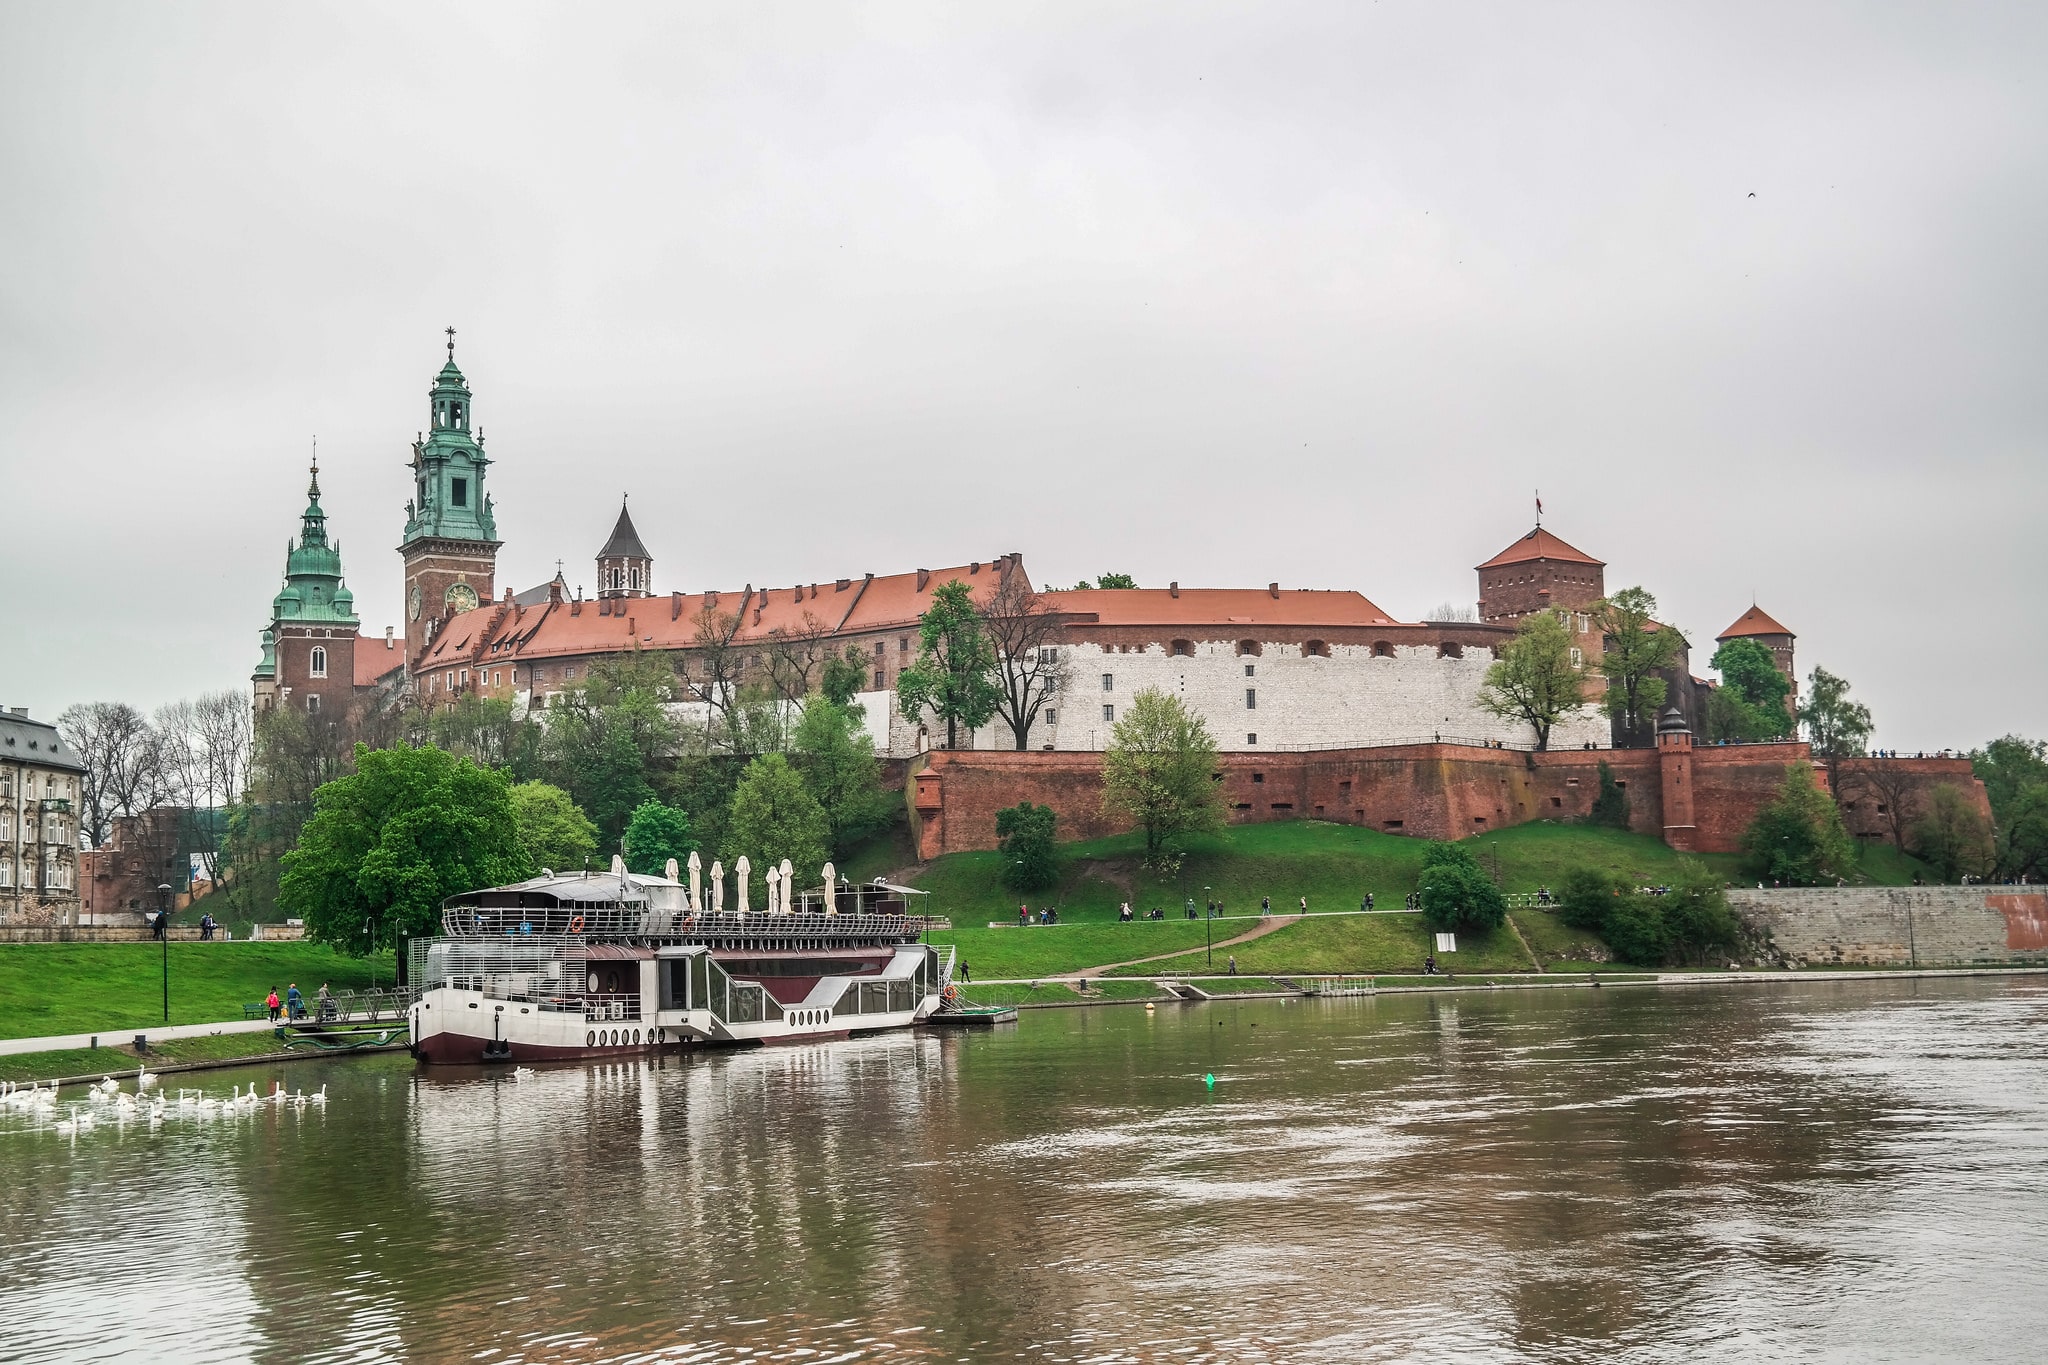 Wawel Castle in Krakow, seen from the river.